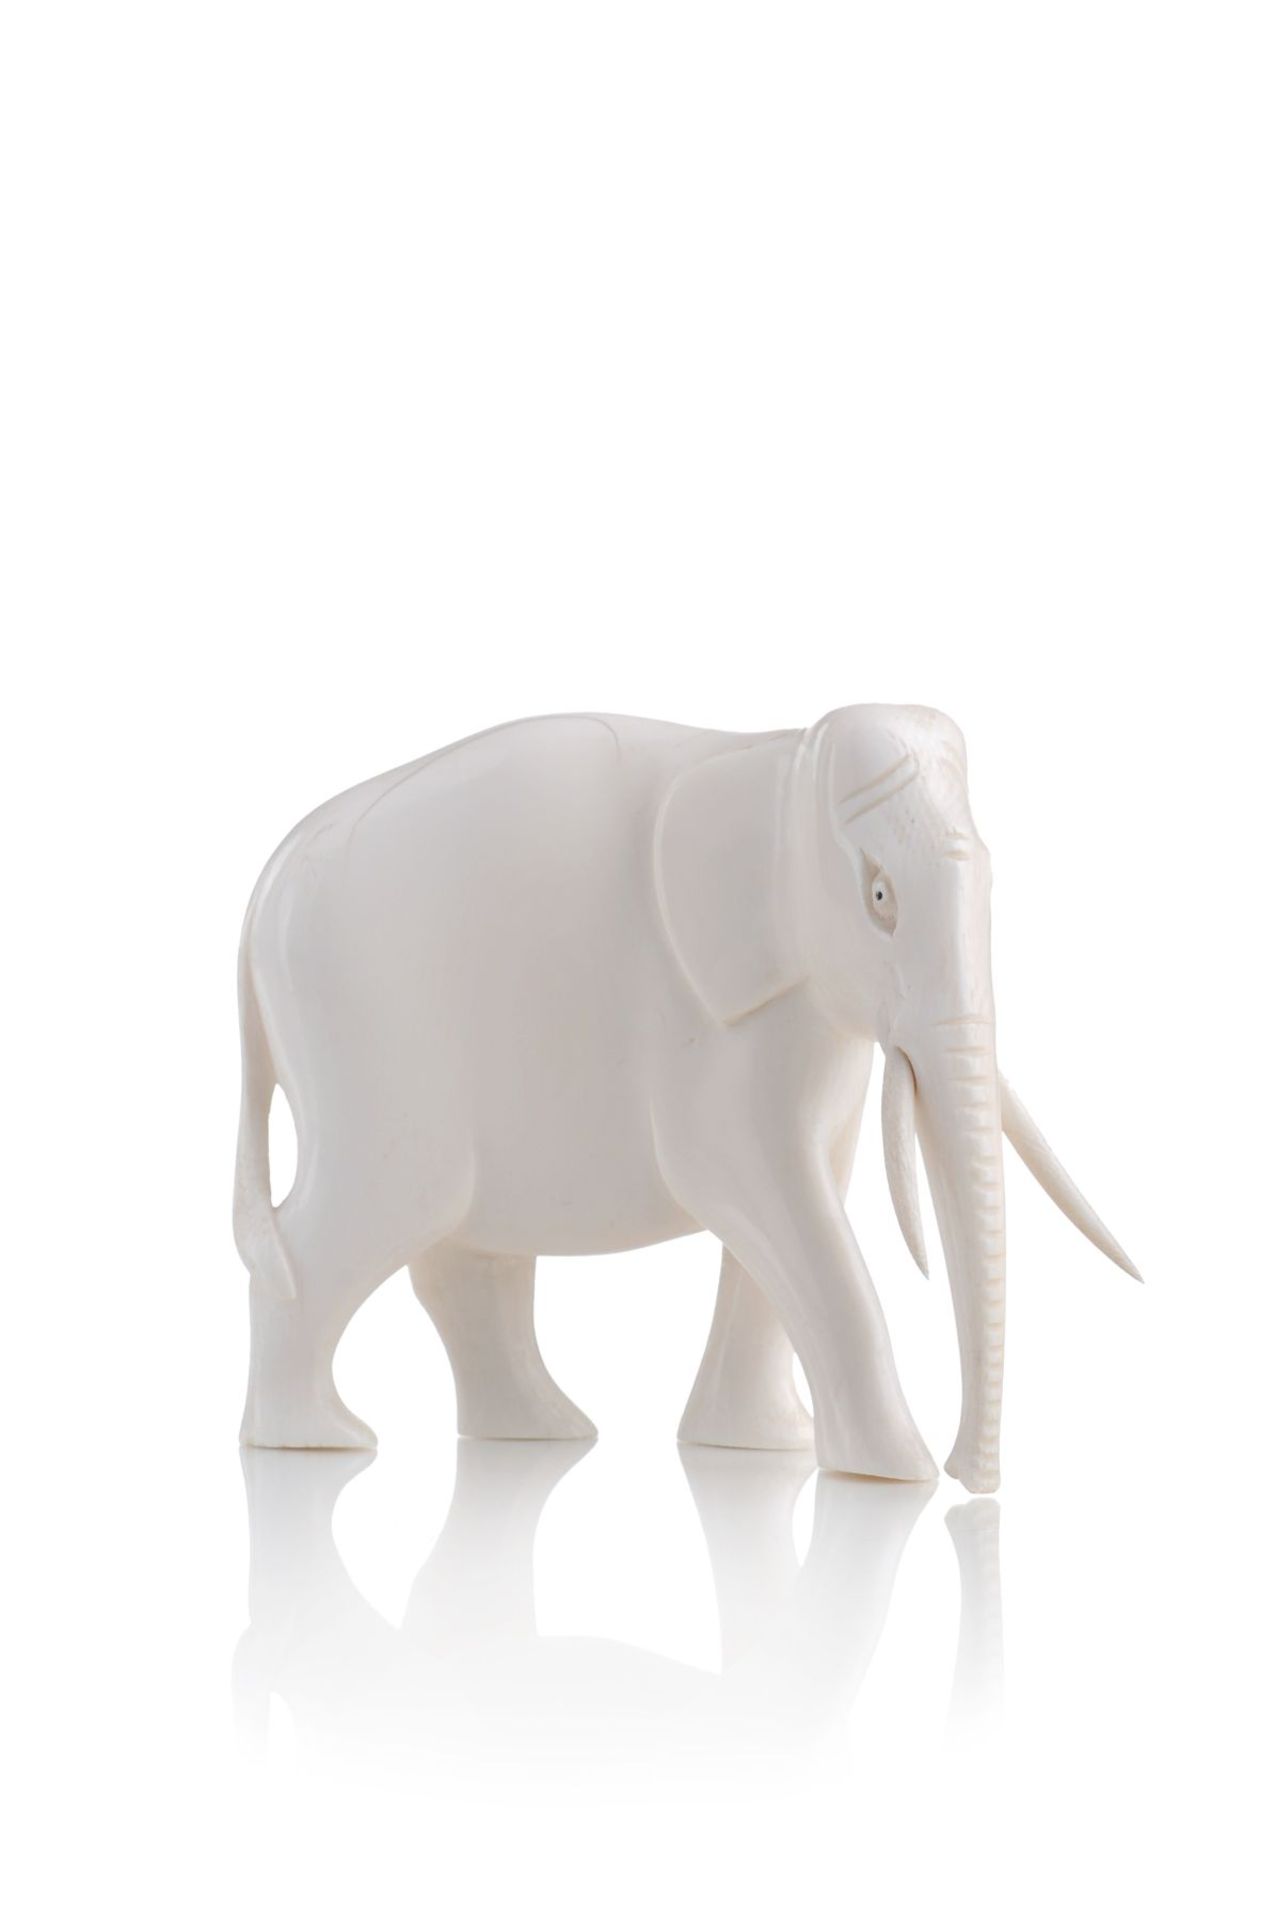 Asiatischer Elefant. Frühes 20. Jh. Elfenbein, geschnitzt und poliert. Unsigniert.Ein Stoßzahn neu